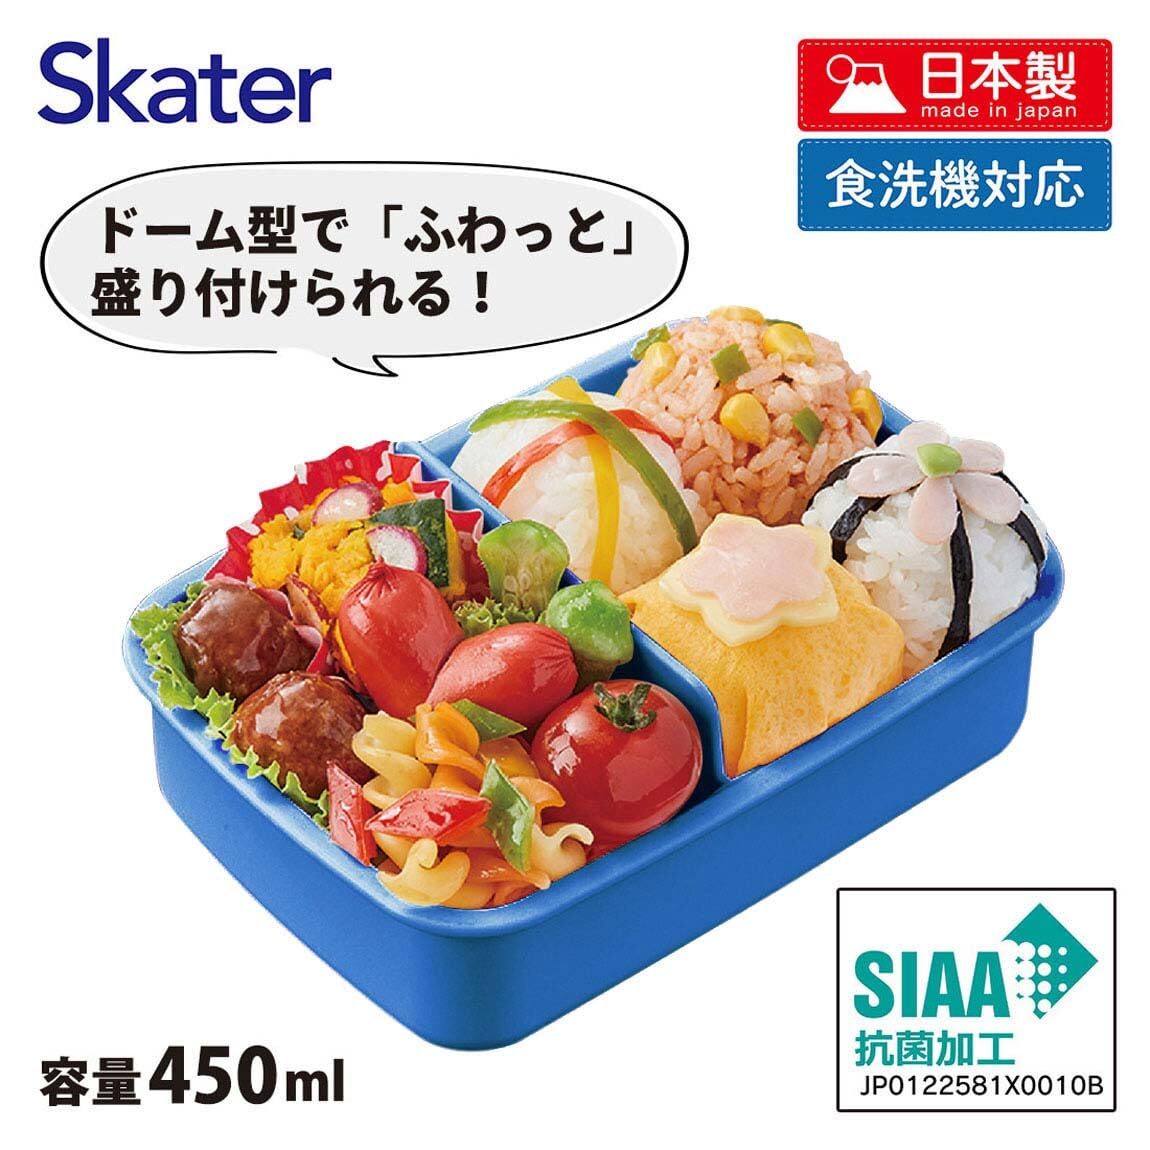 スケーター(Skater) 子供用 お弁当箱 1段 450ml ふわっと盛れるドーム型 プラレール 24 抗菌 子供用 日本製 RBF3ANAG_画像4